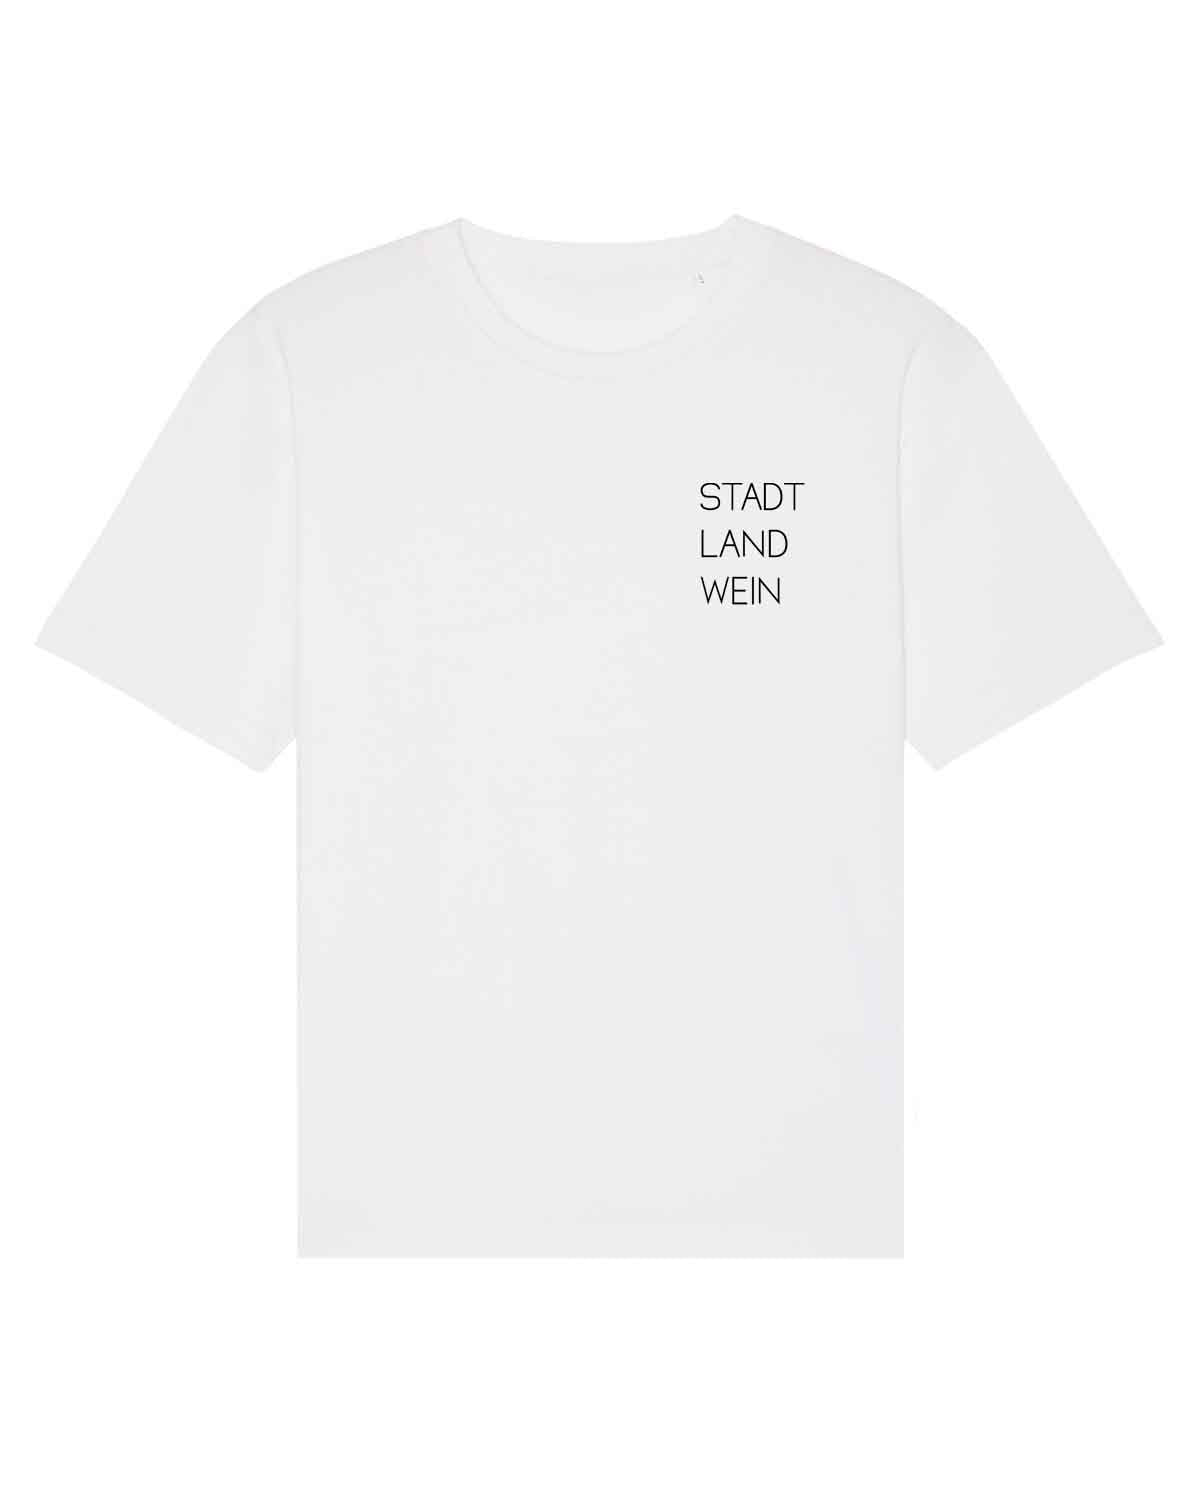 Stadt, Land, Wein - Oversize Unisex Shirt